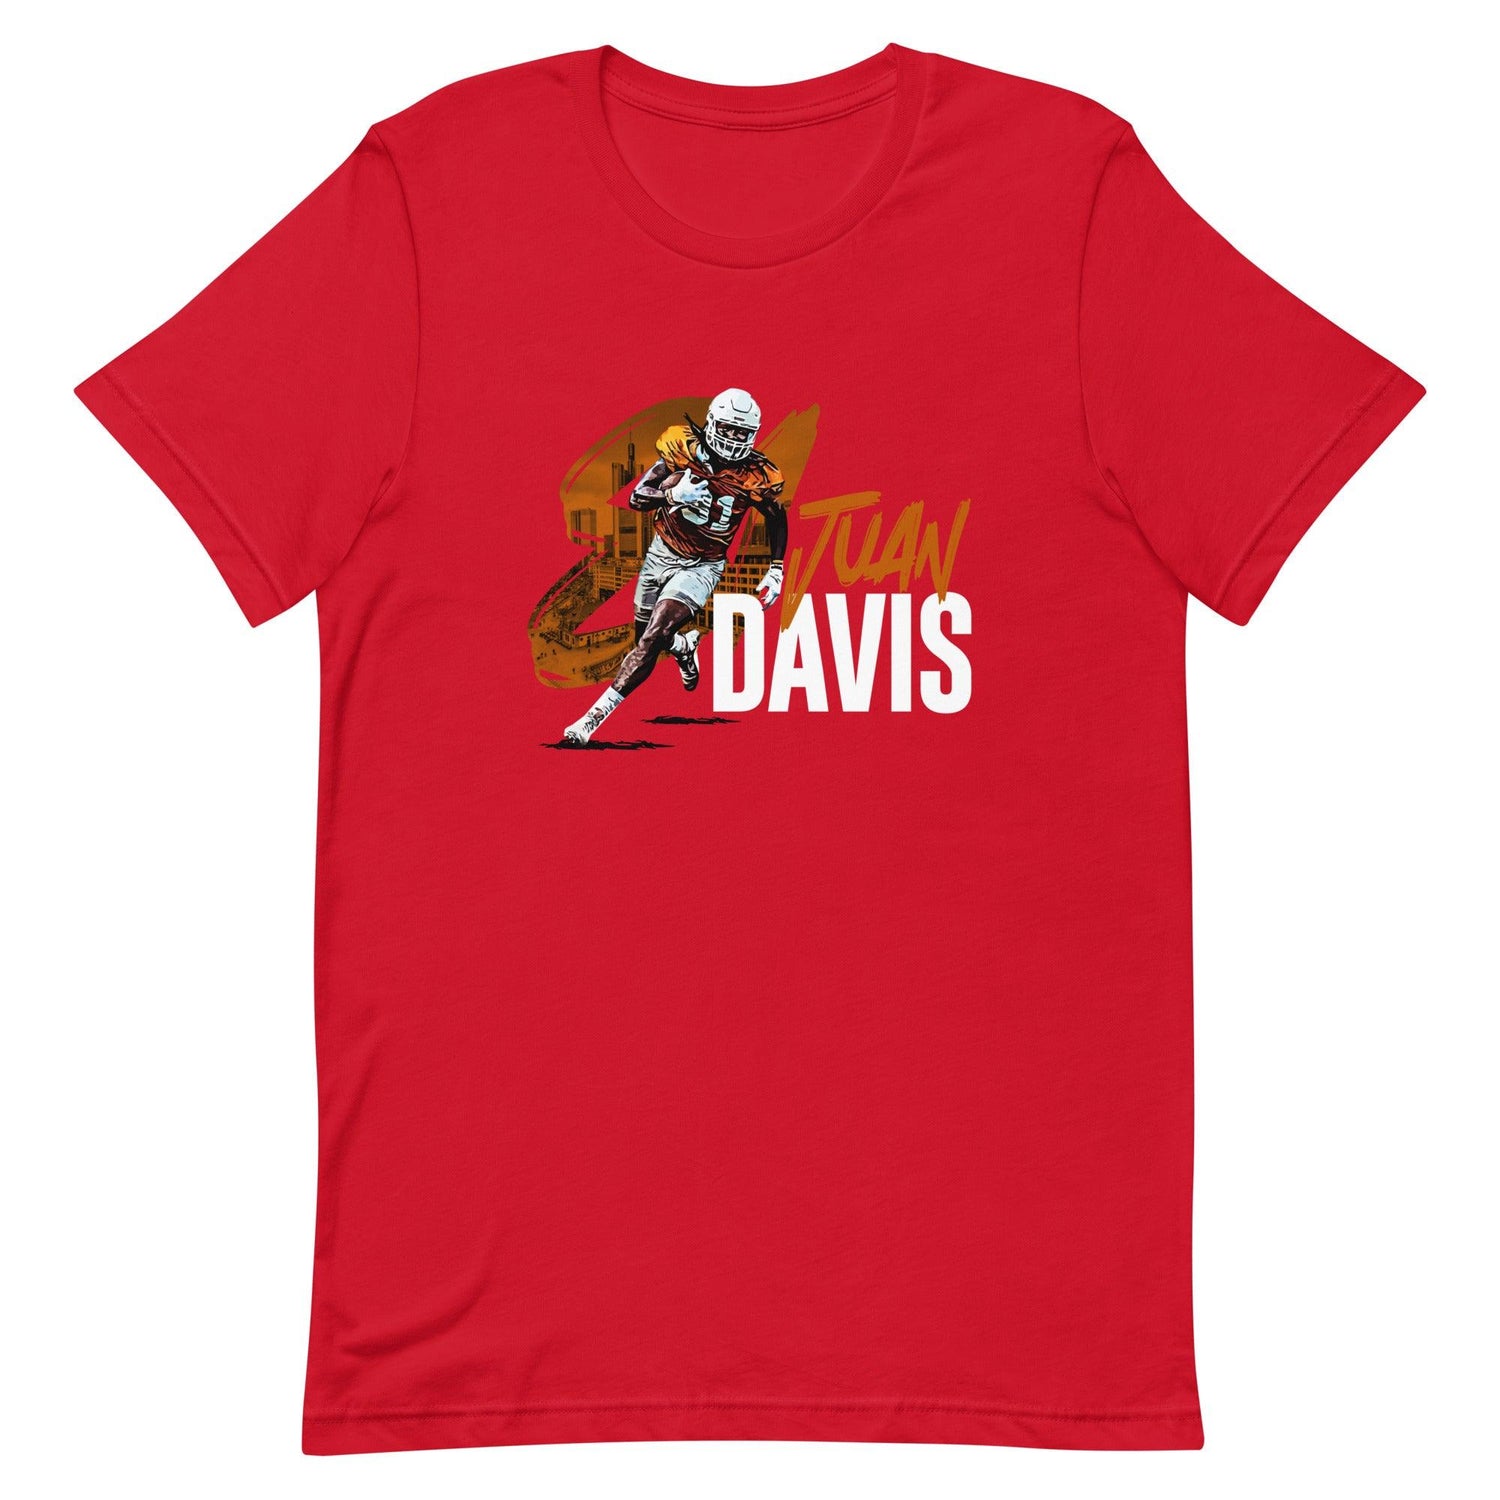 Juan Davis "Gameday" t-shirt - Fan Arch